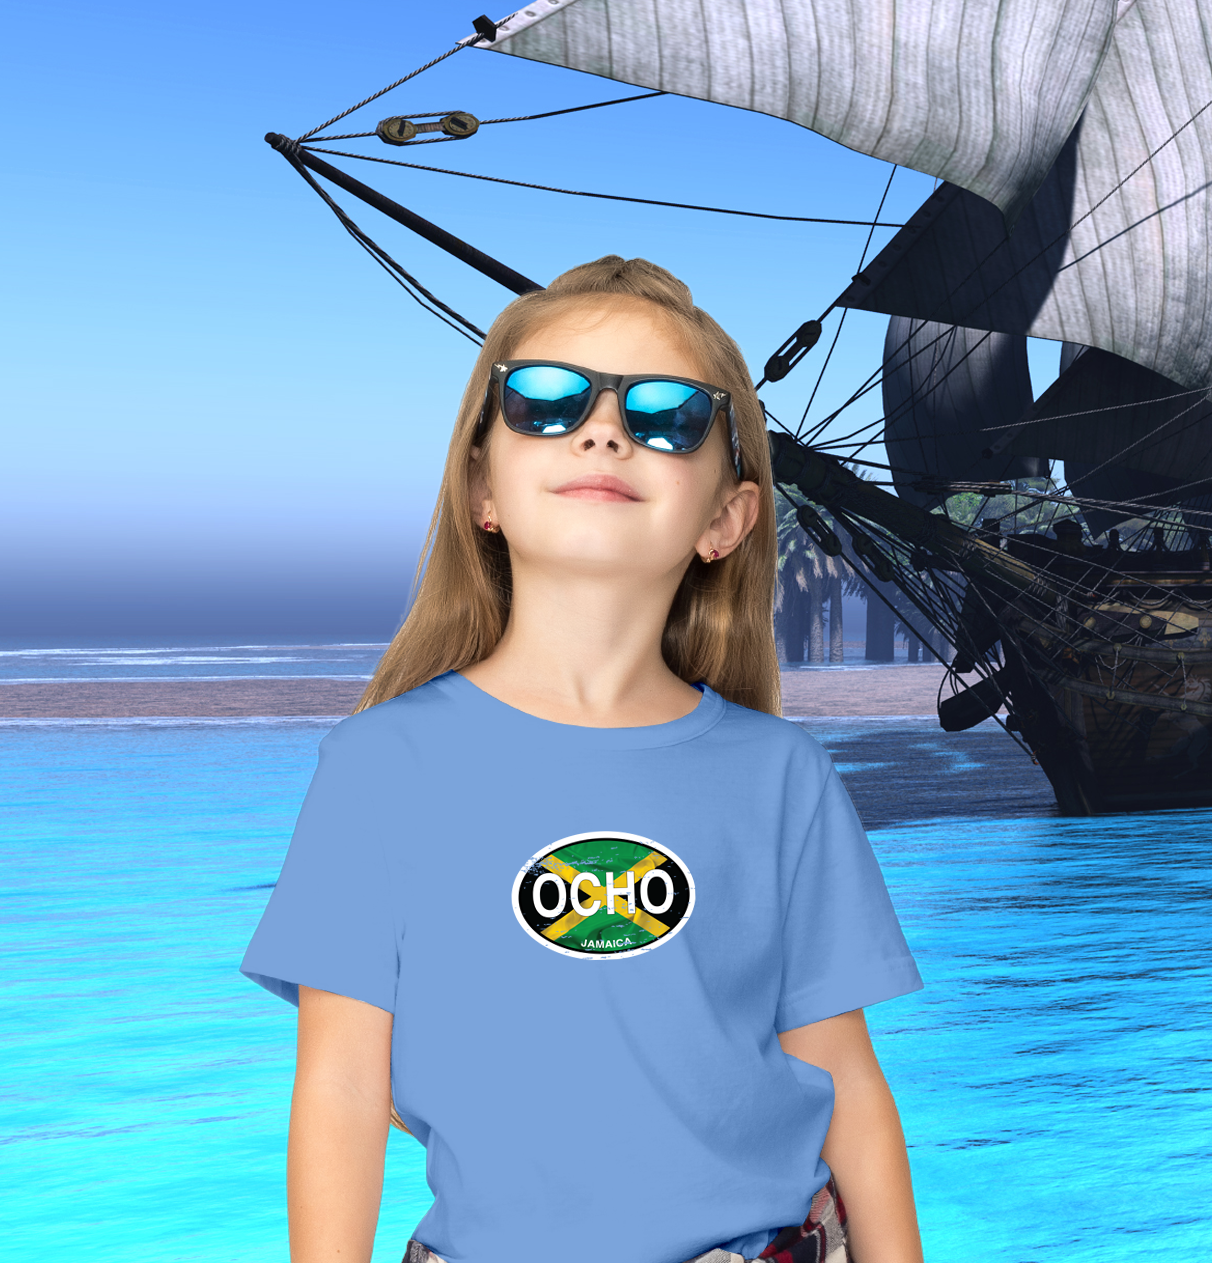 Ocho Rios Flag Youth T-Shirt - My Destination Location